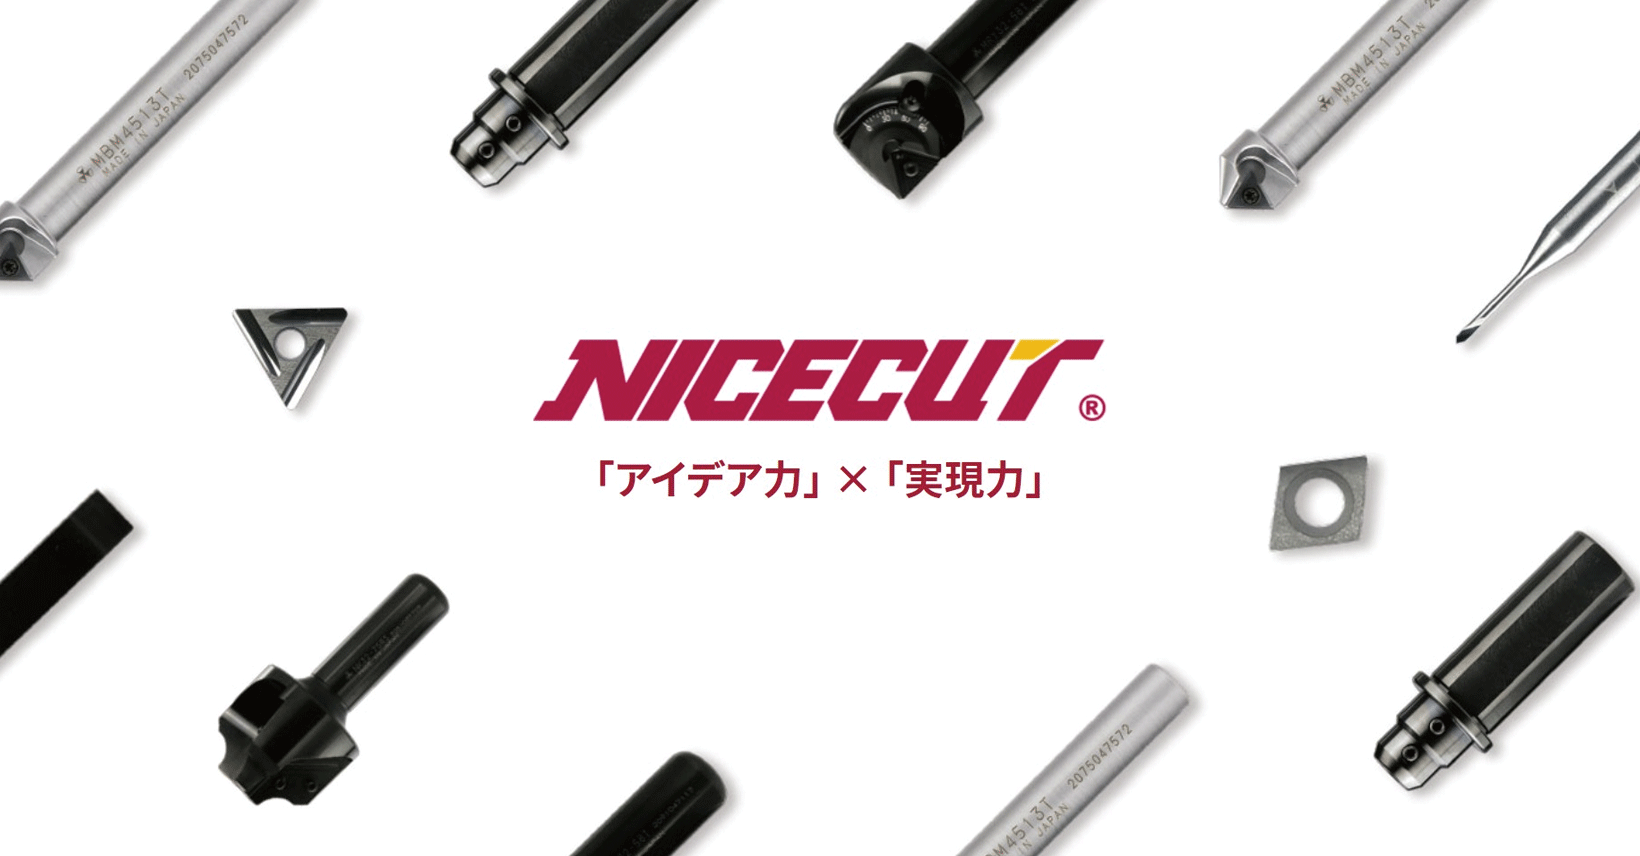 NICECUT(富士元工業) 加工工具 スクレーパー・リムーバー モミエコ2 NKM6023T 通販